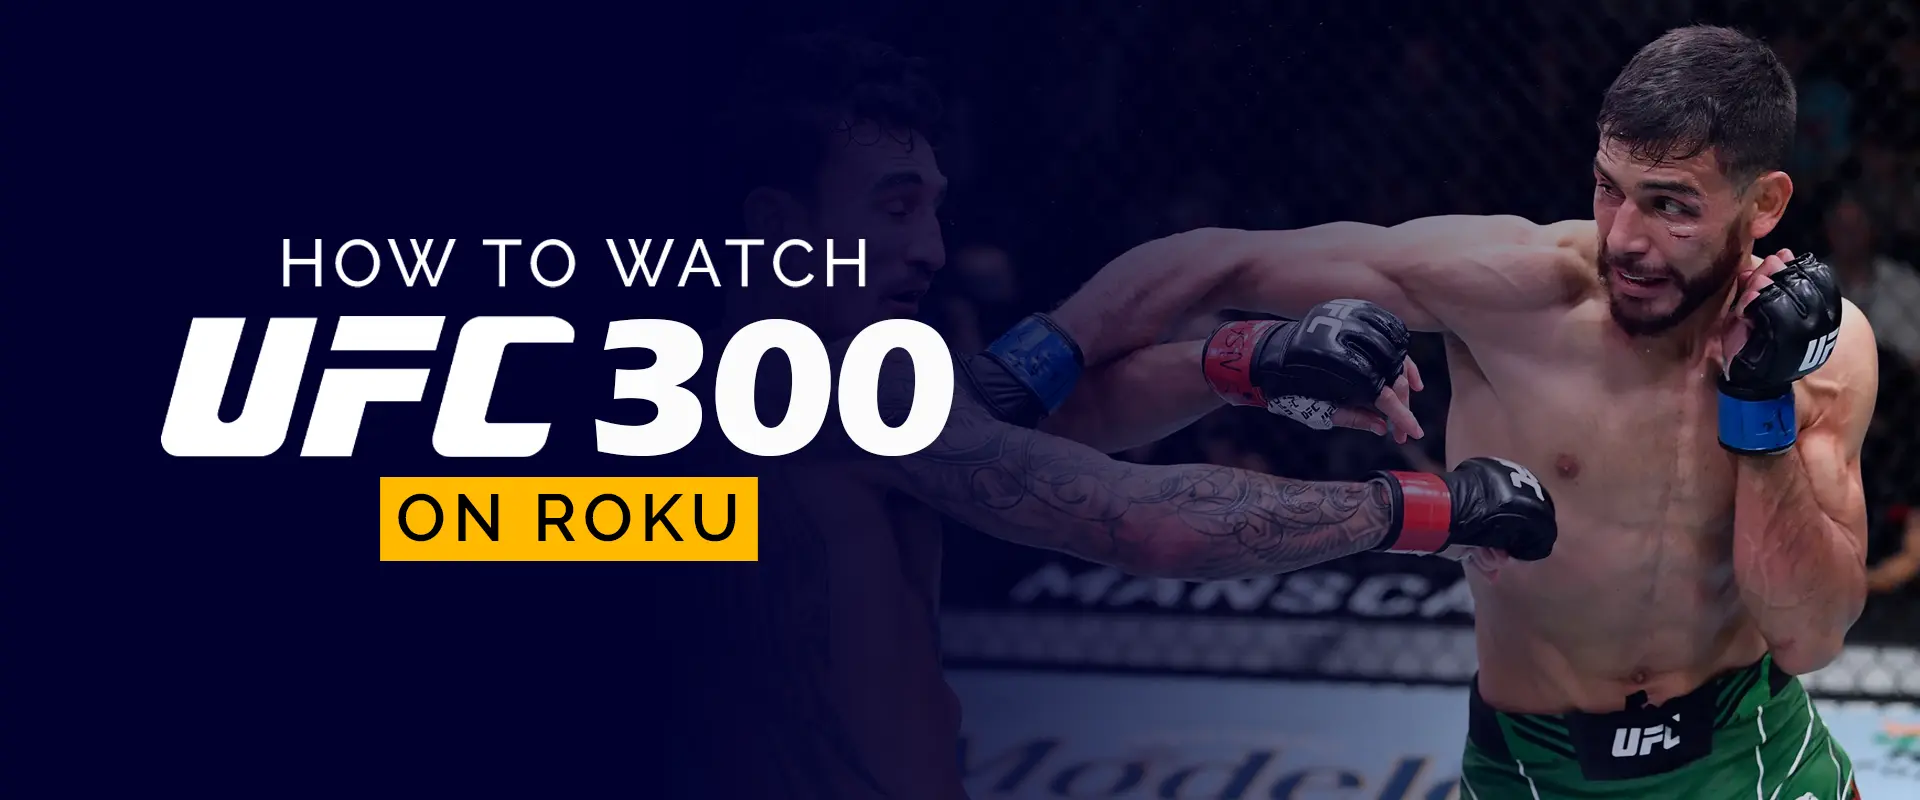 Hur man tittar på UFC 300 på Roku